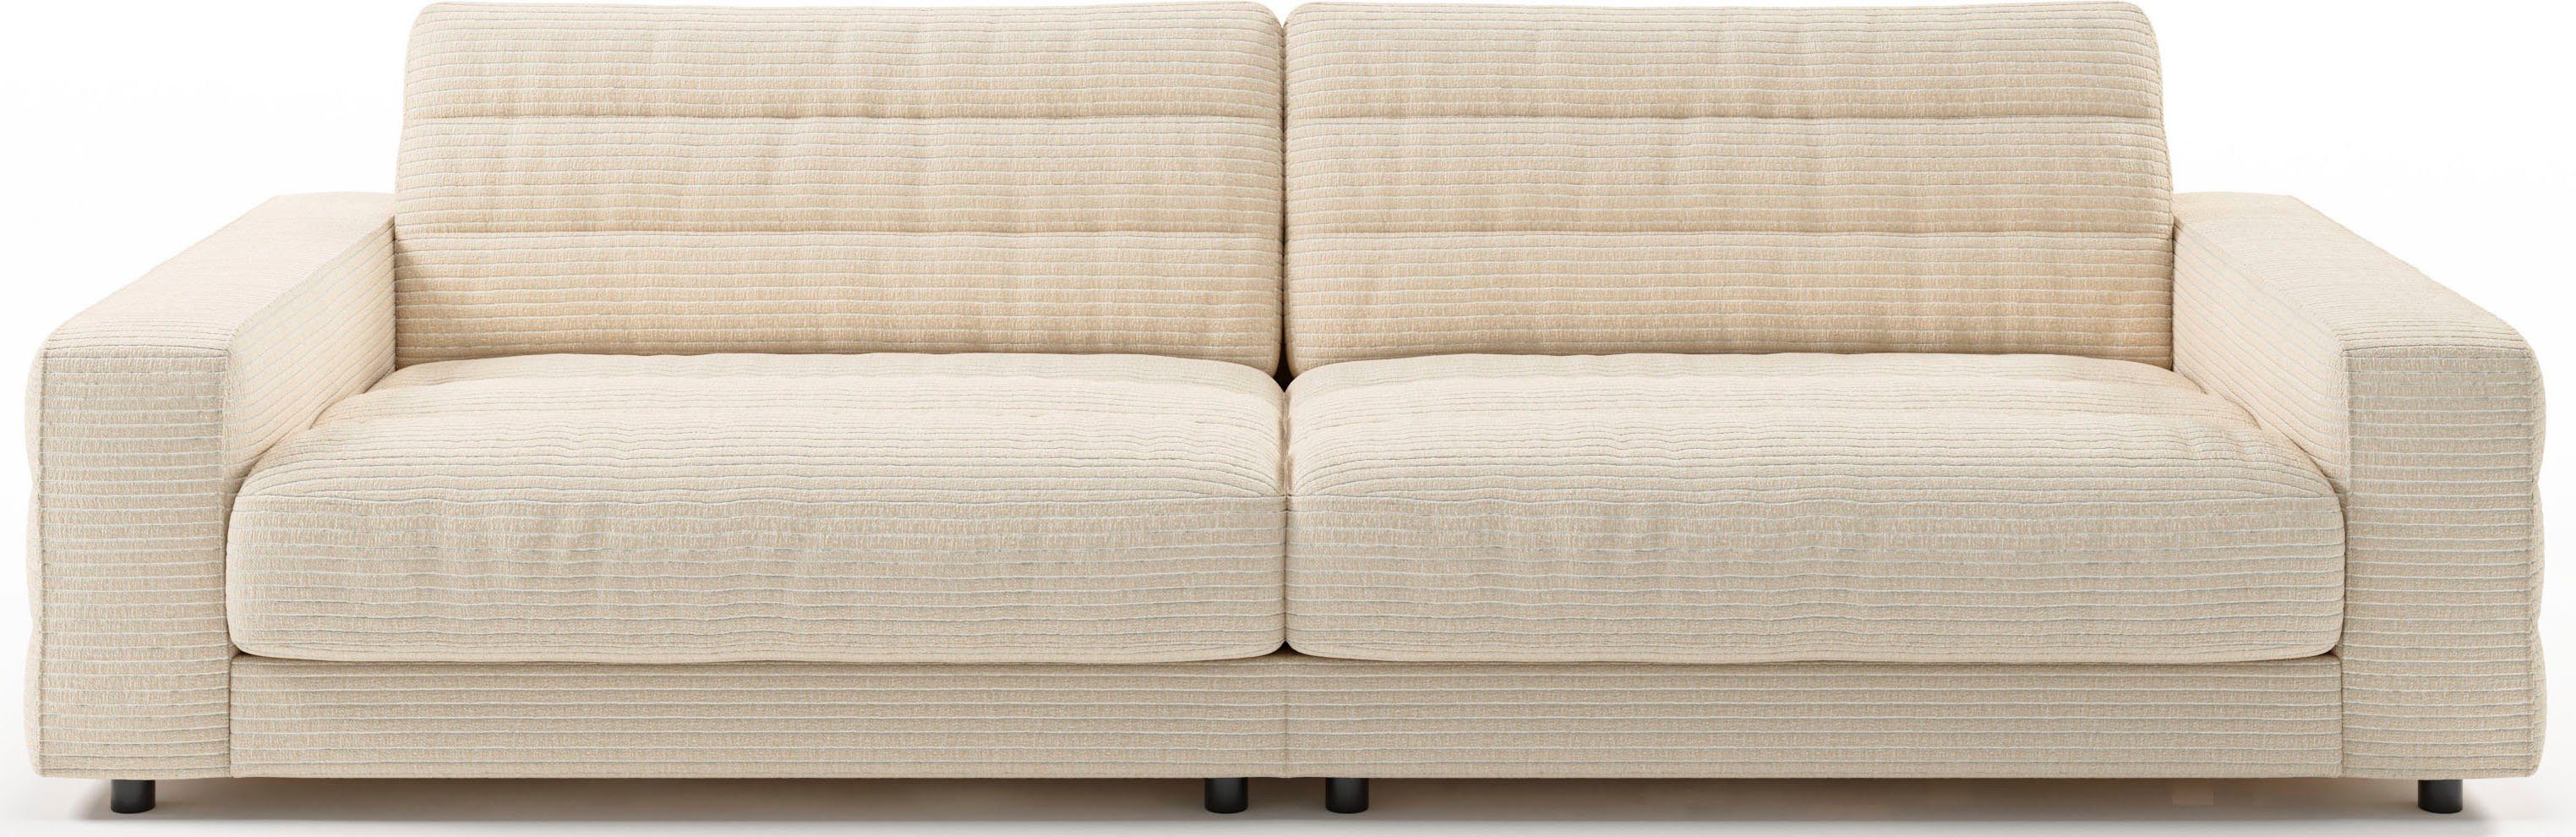 3C Candy Big-Sofa Stripes, Lose Rückenkissen, mit feiner Quersteppung natur